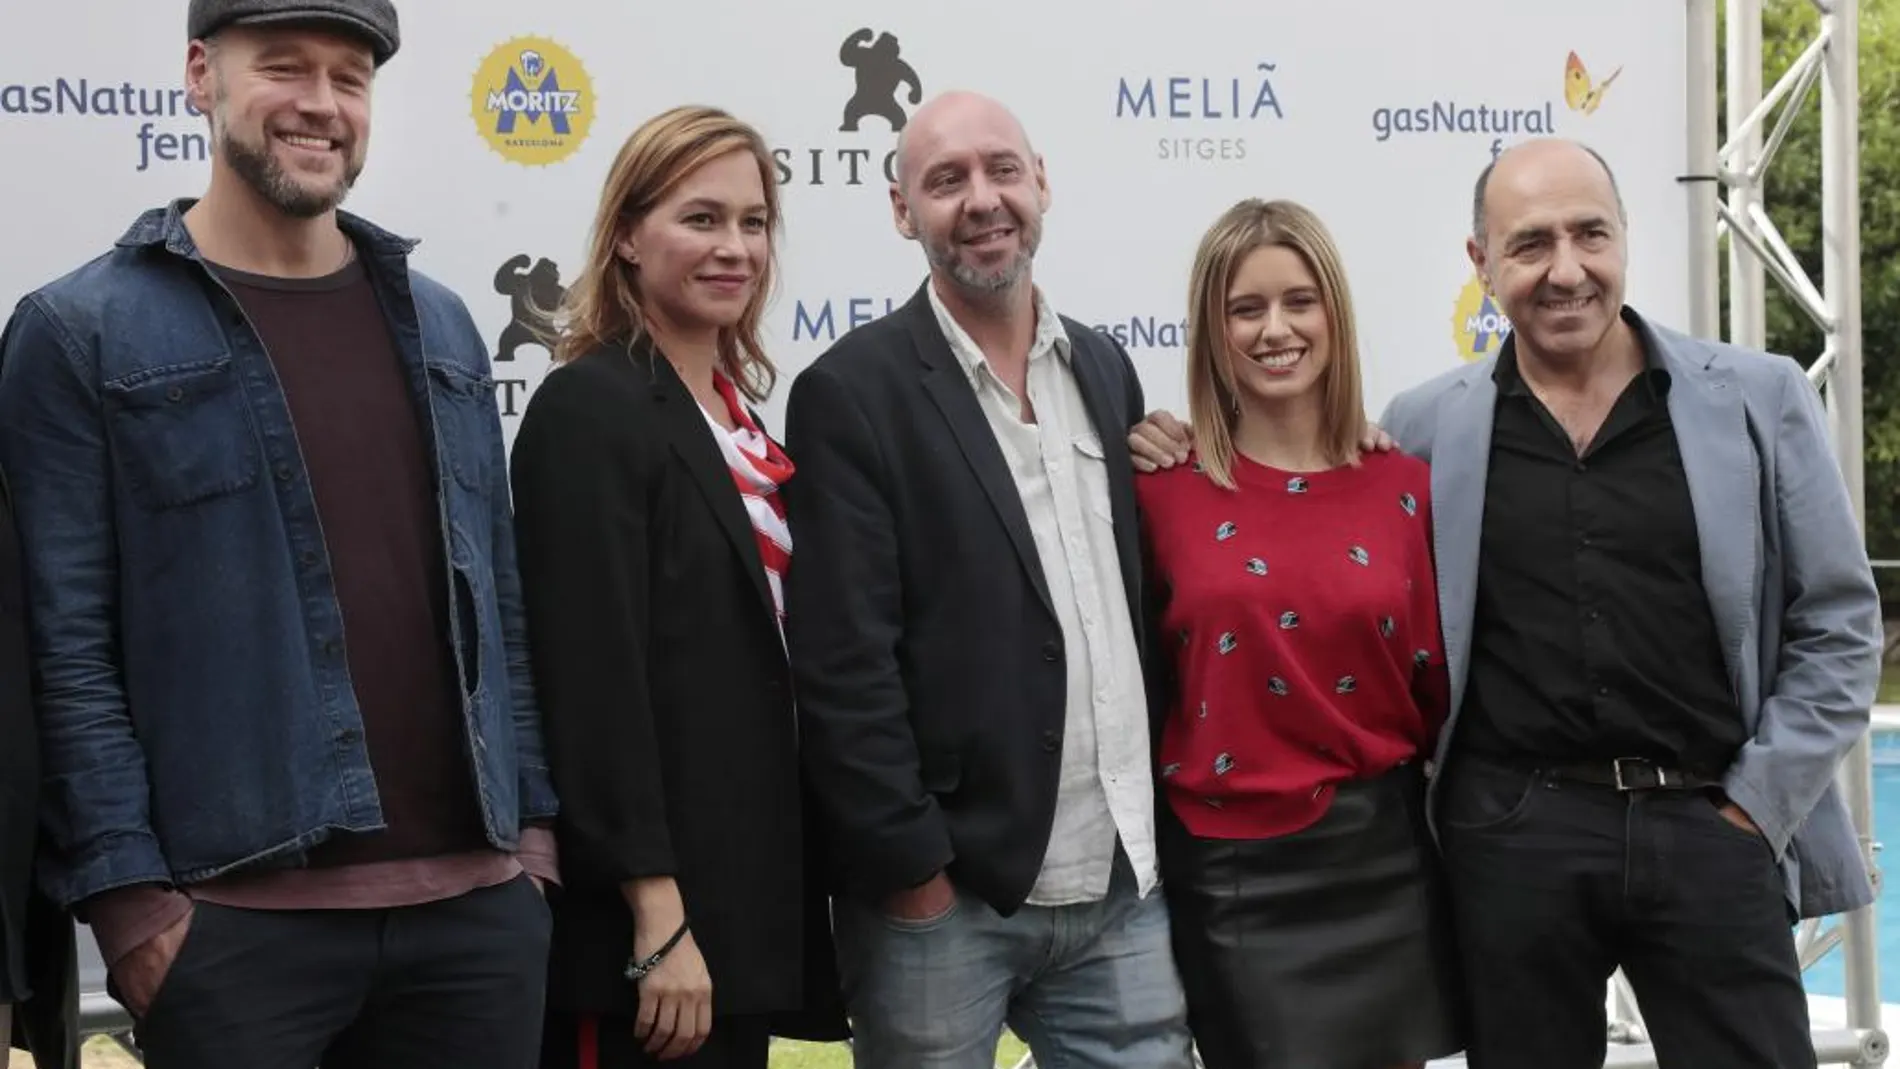 El director Jaume Balagueró, posa junto a los actores, Elliot Cowan, Franka Potente y Manuela Vellés, y el productor Carlos Fernández, durante la presentación de su película "Muse"